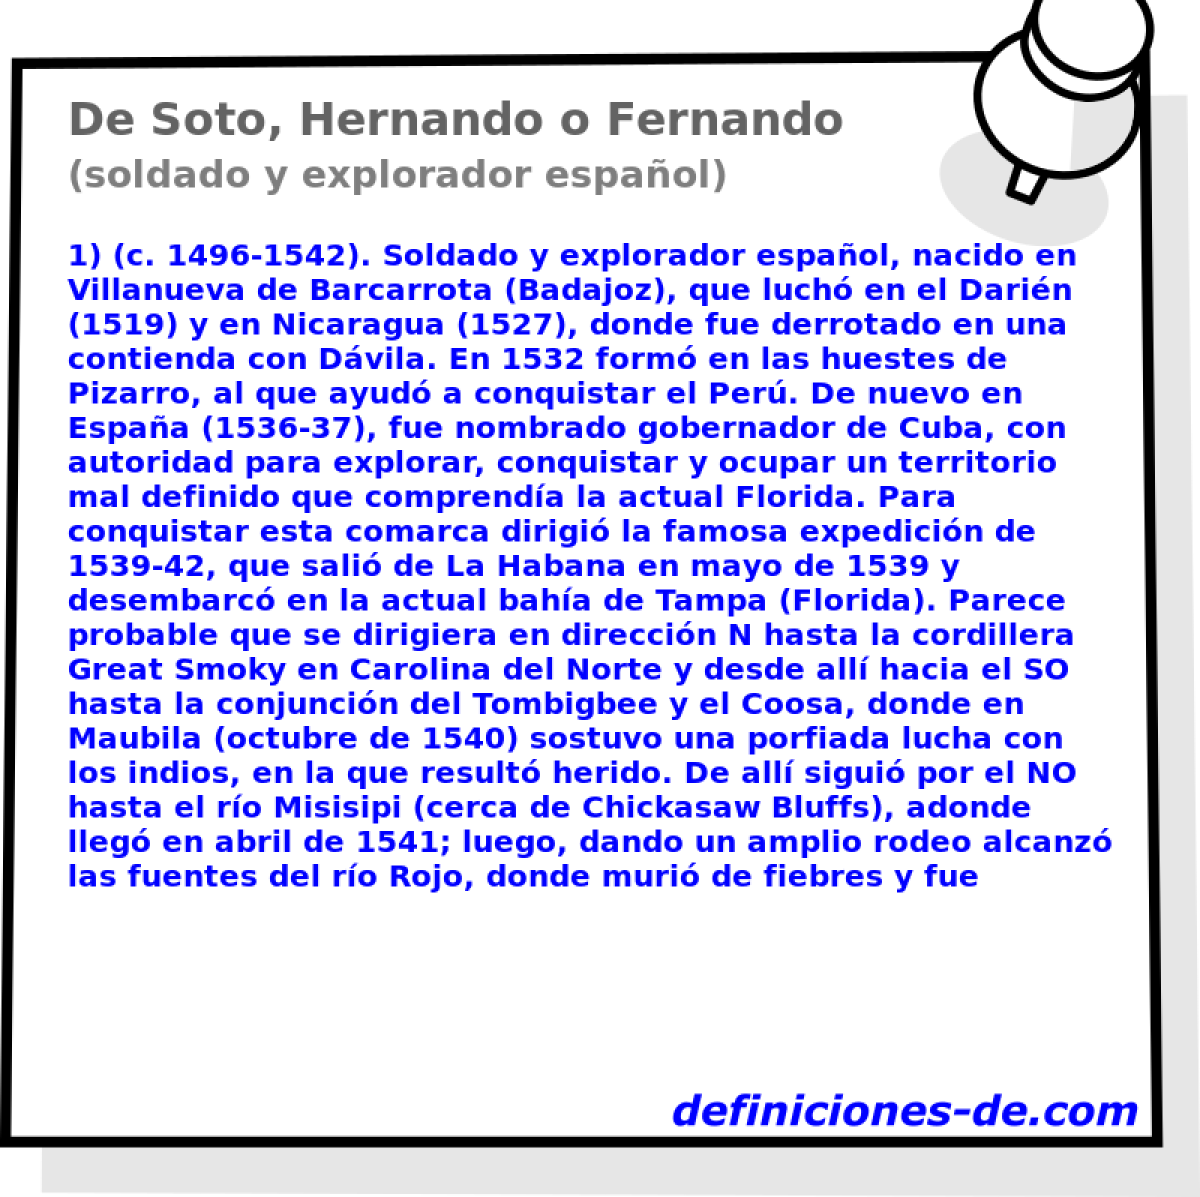 De Soto, Hernando o Fernando (soldado y explorador espaol)